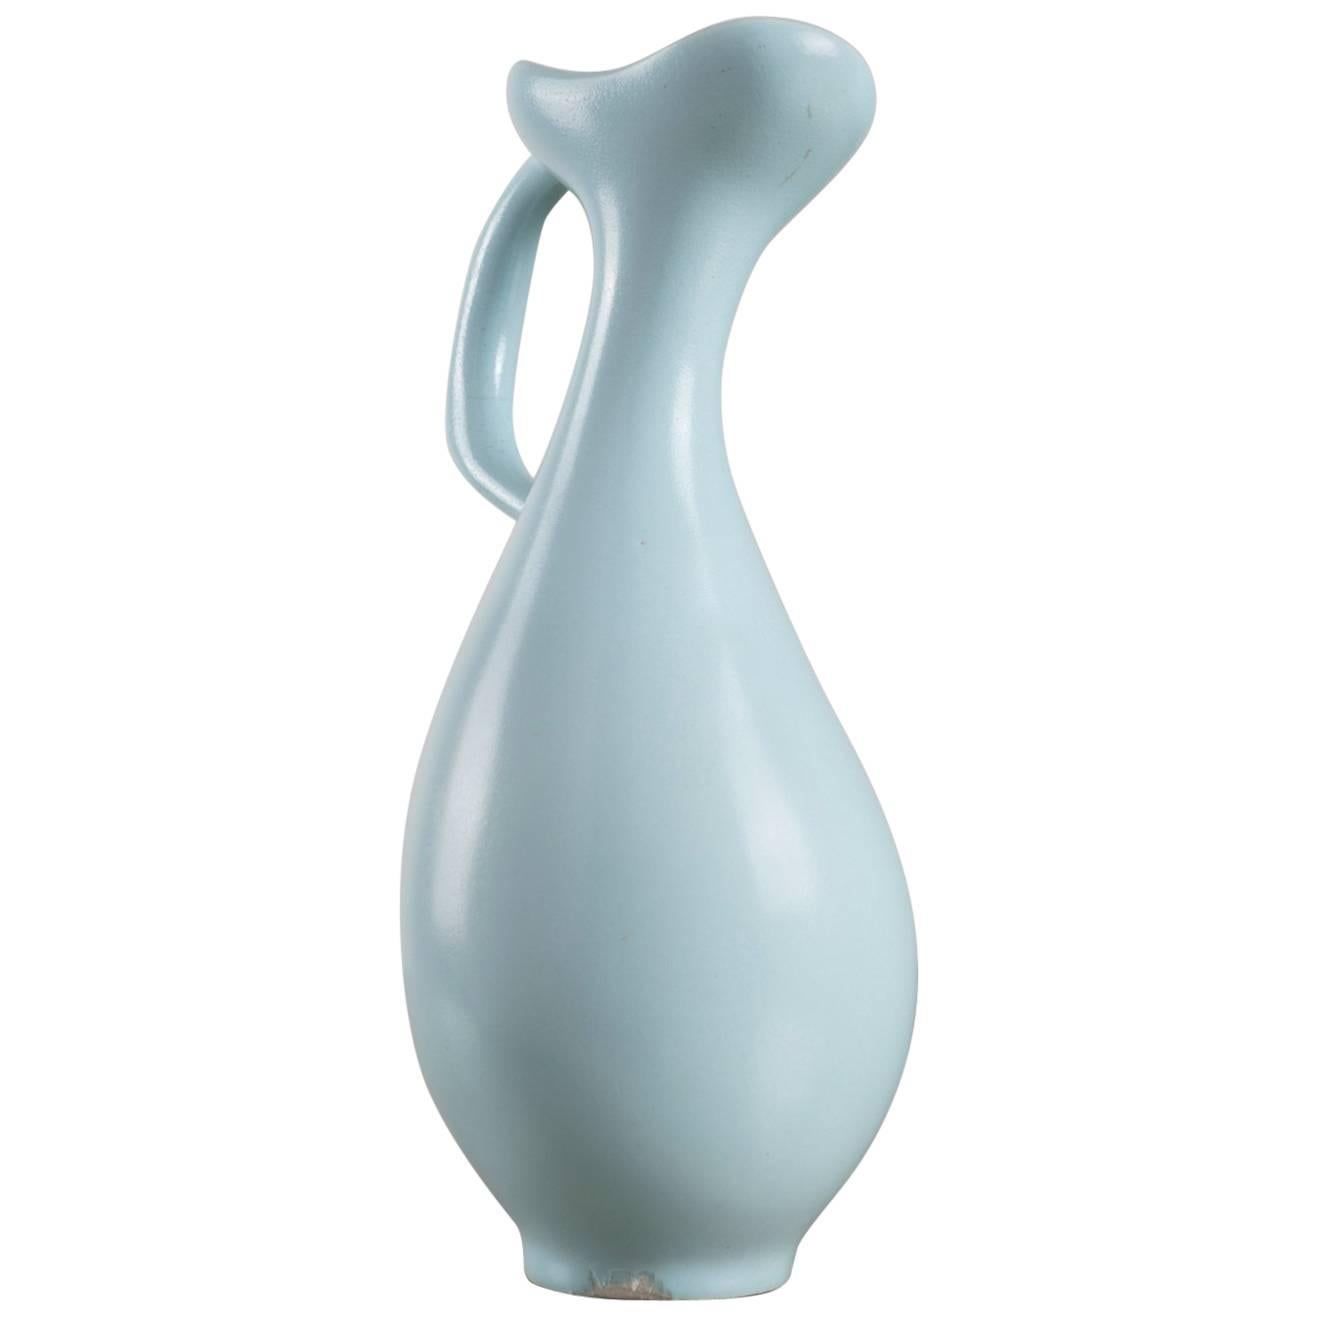 Ceramic Vase Model "C8" by Antonia Campi for S.C.I. Laveno, Italy, 1940s